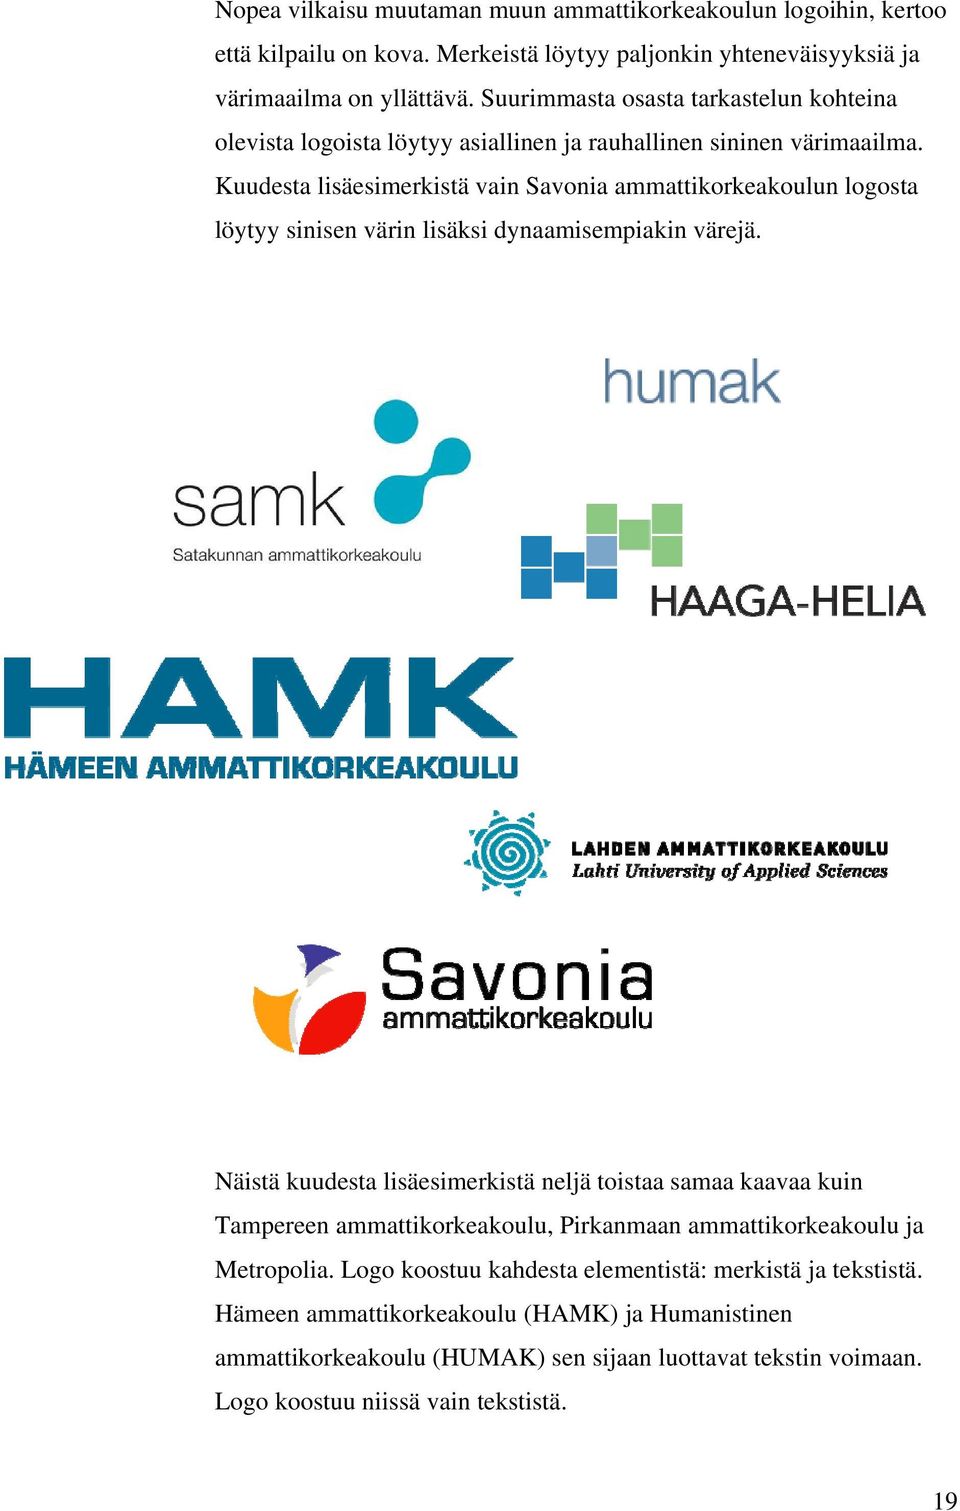 Kuudesta lisäesimerkistä vain Savonia ammattikorkeakoulun logosta löytyy sinisen värin lisäksi dynaamisempiakin värejä.